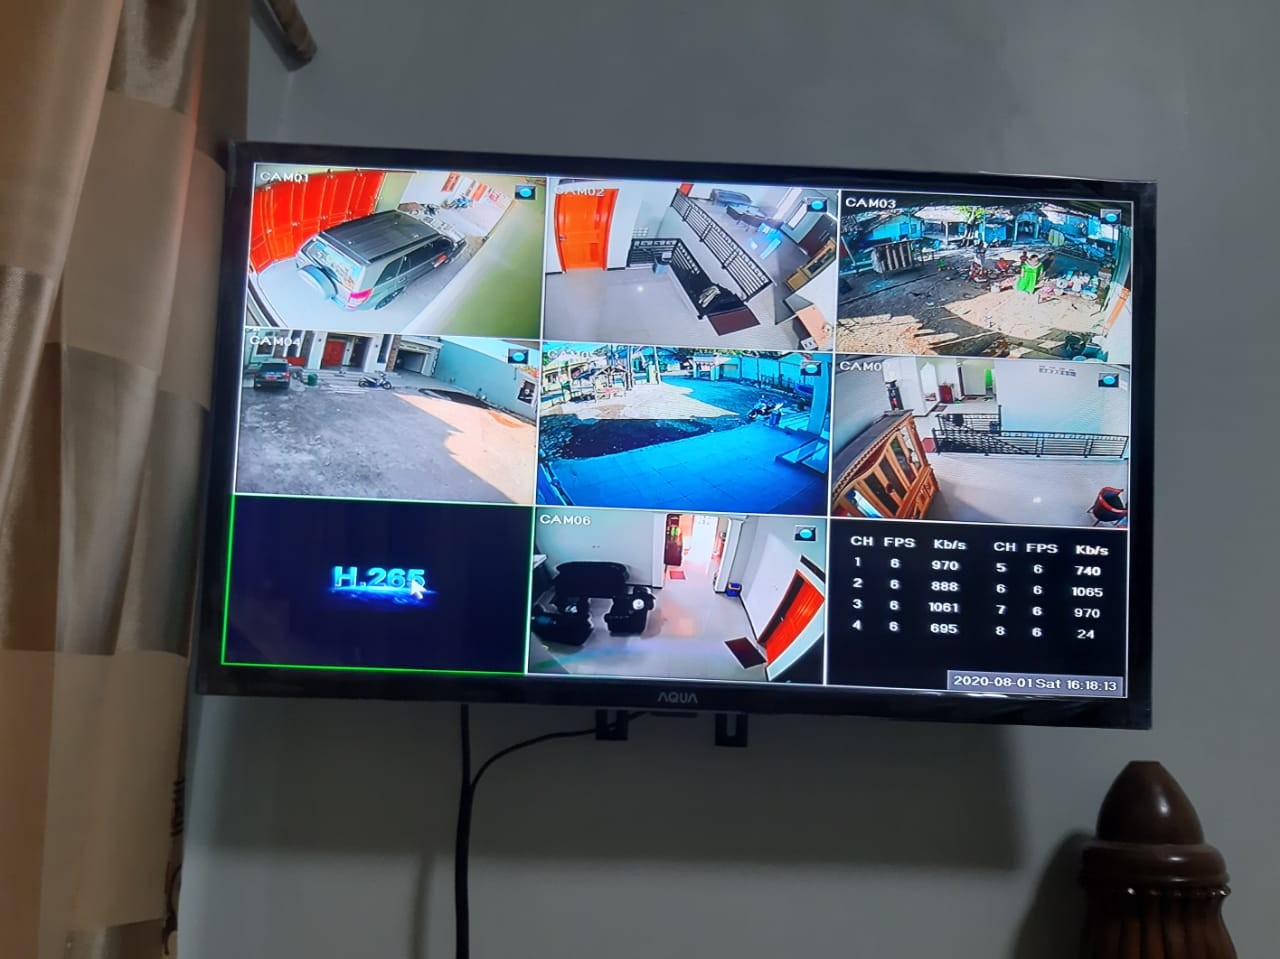 Jasa Pasang & Service CCTV Cikarang Bekasi BERKAH TEKNIK